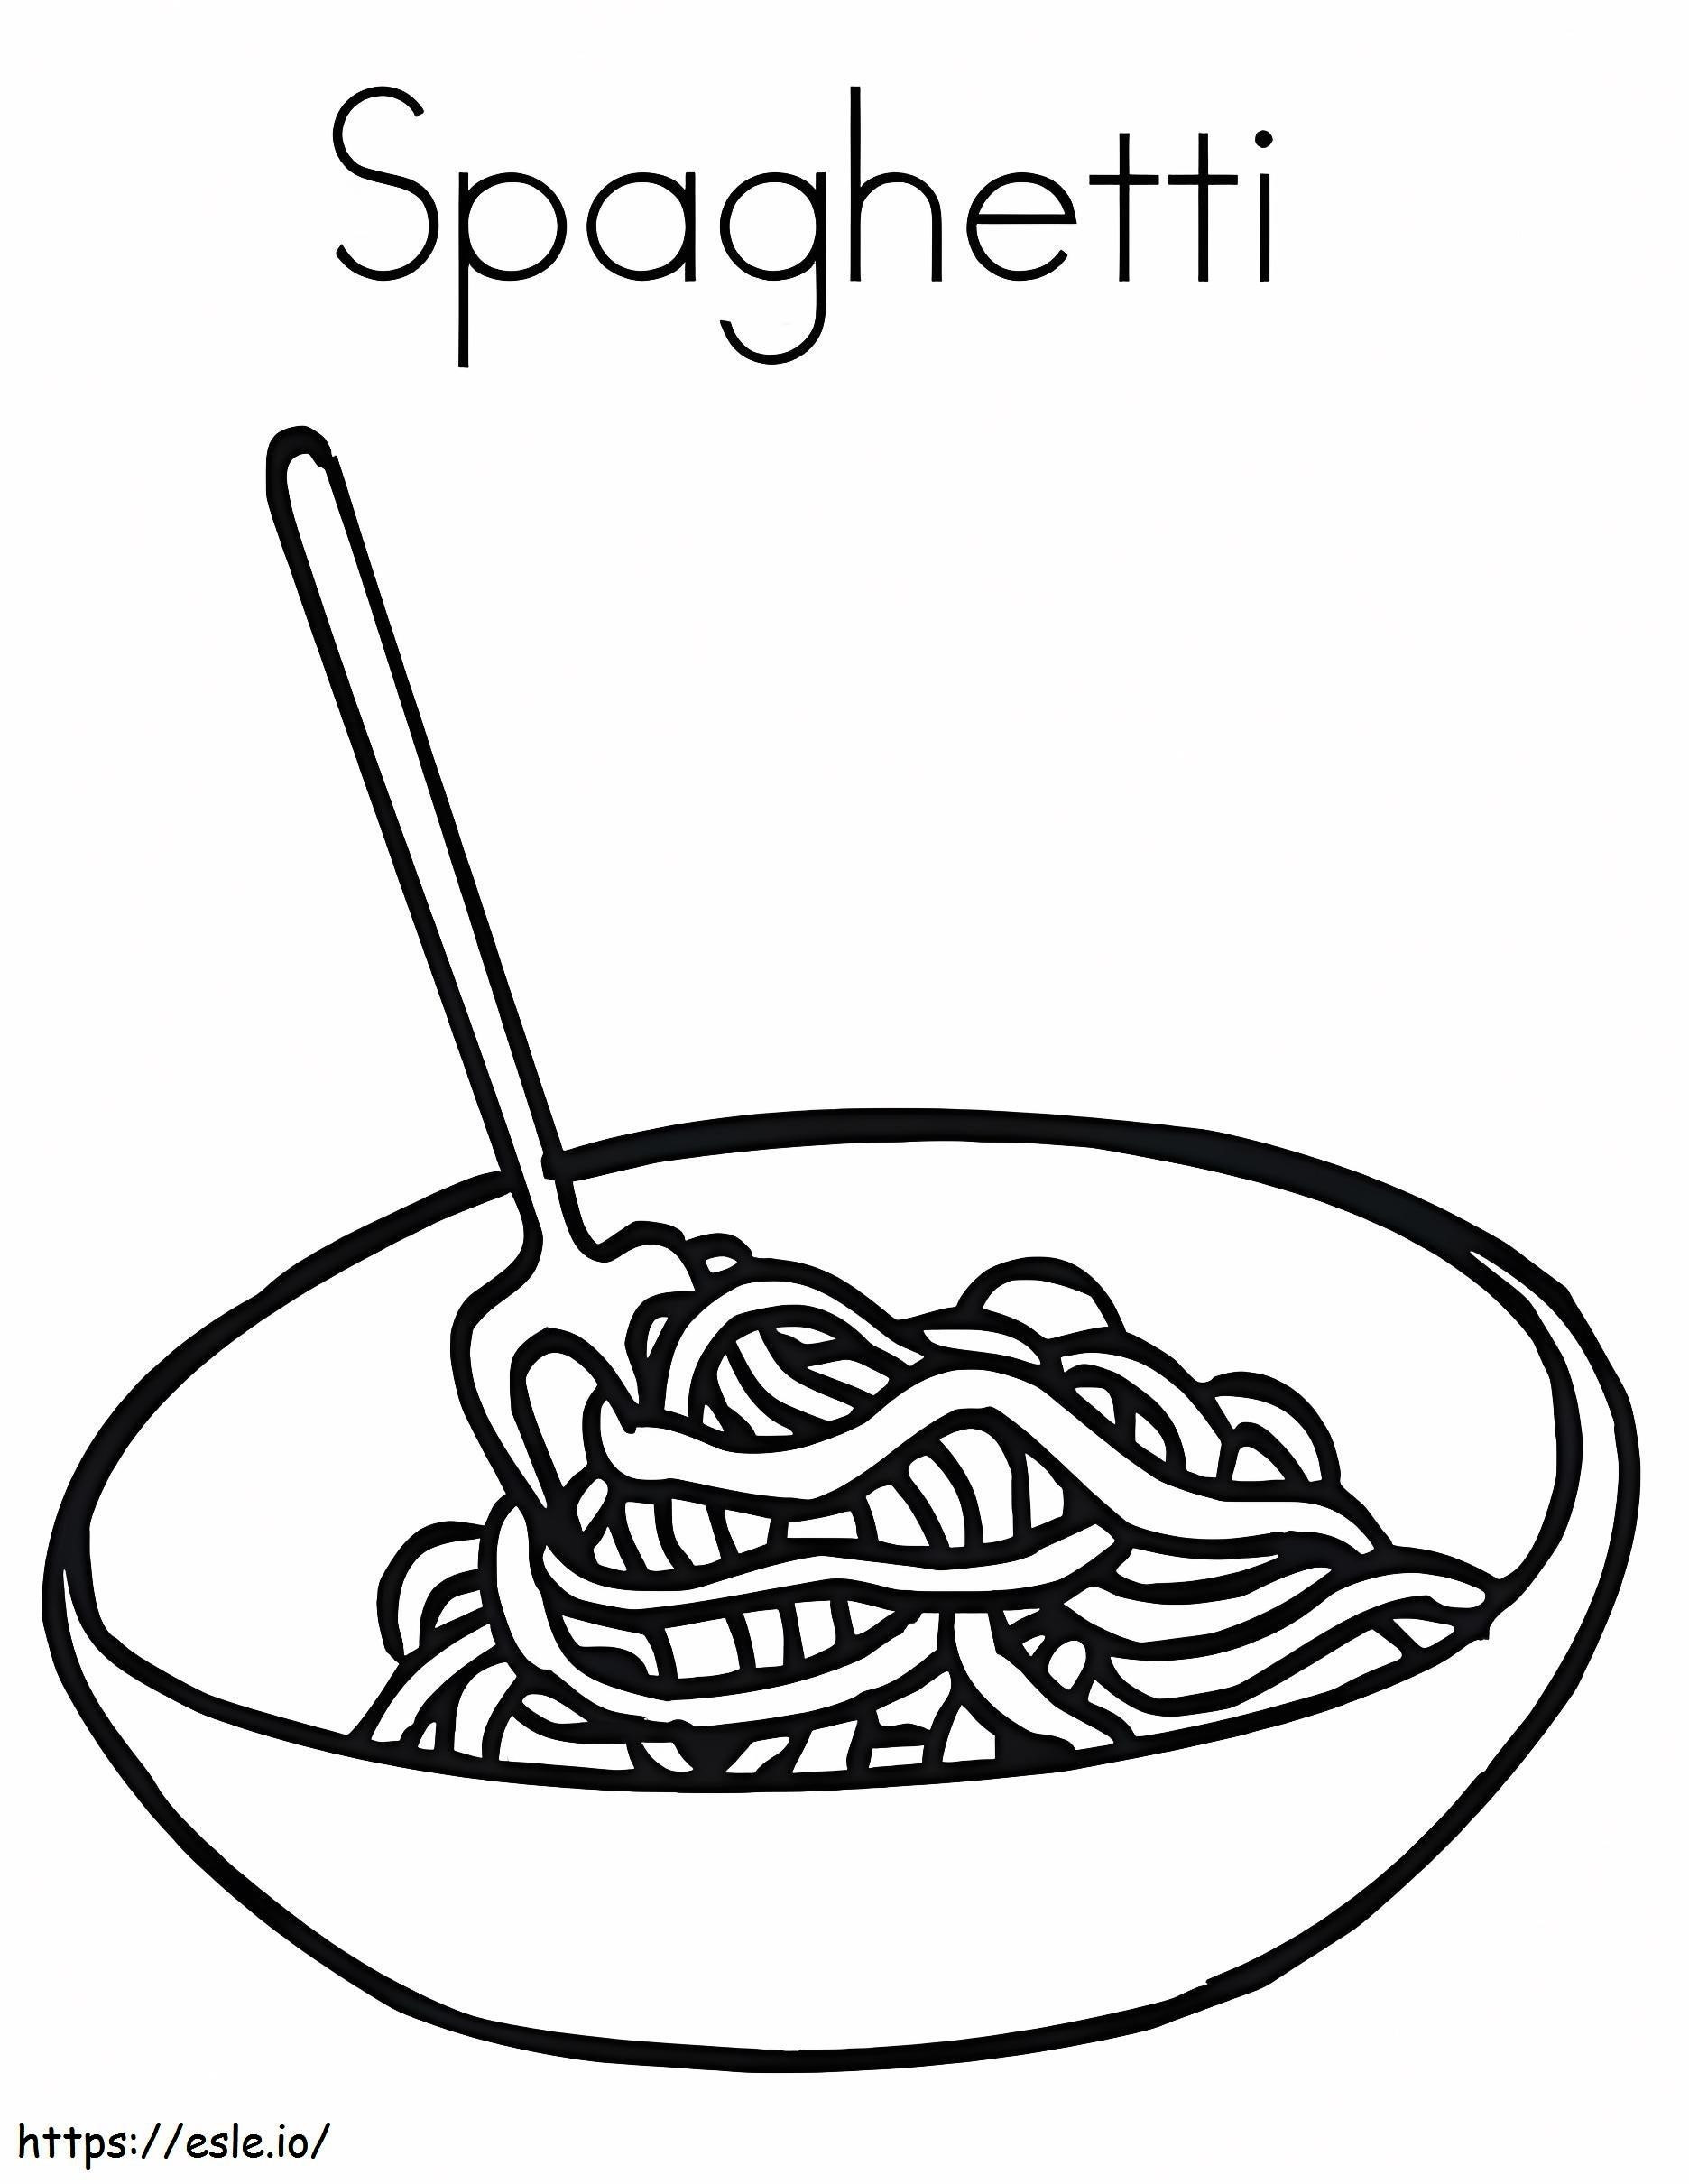 Spaghetti-Nudeln ausmalbilder